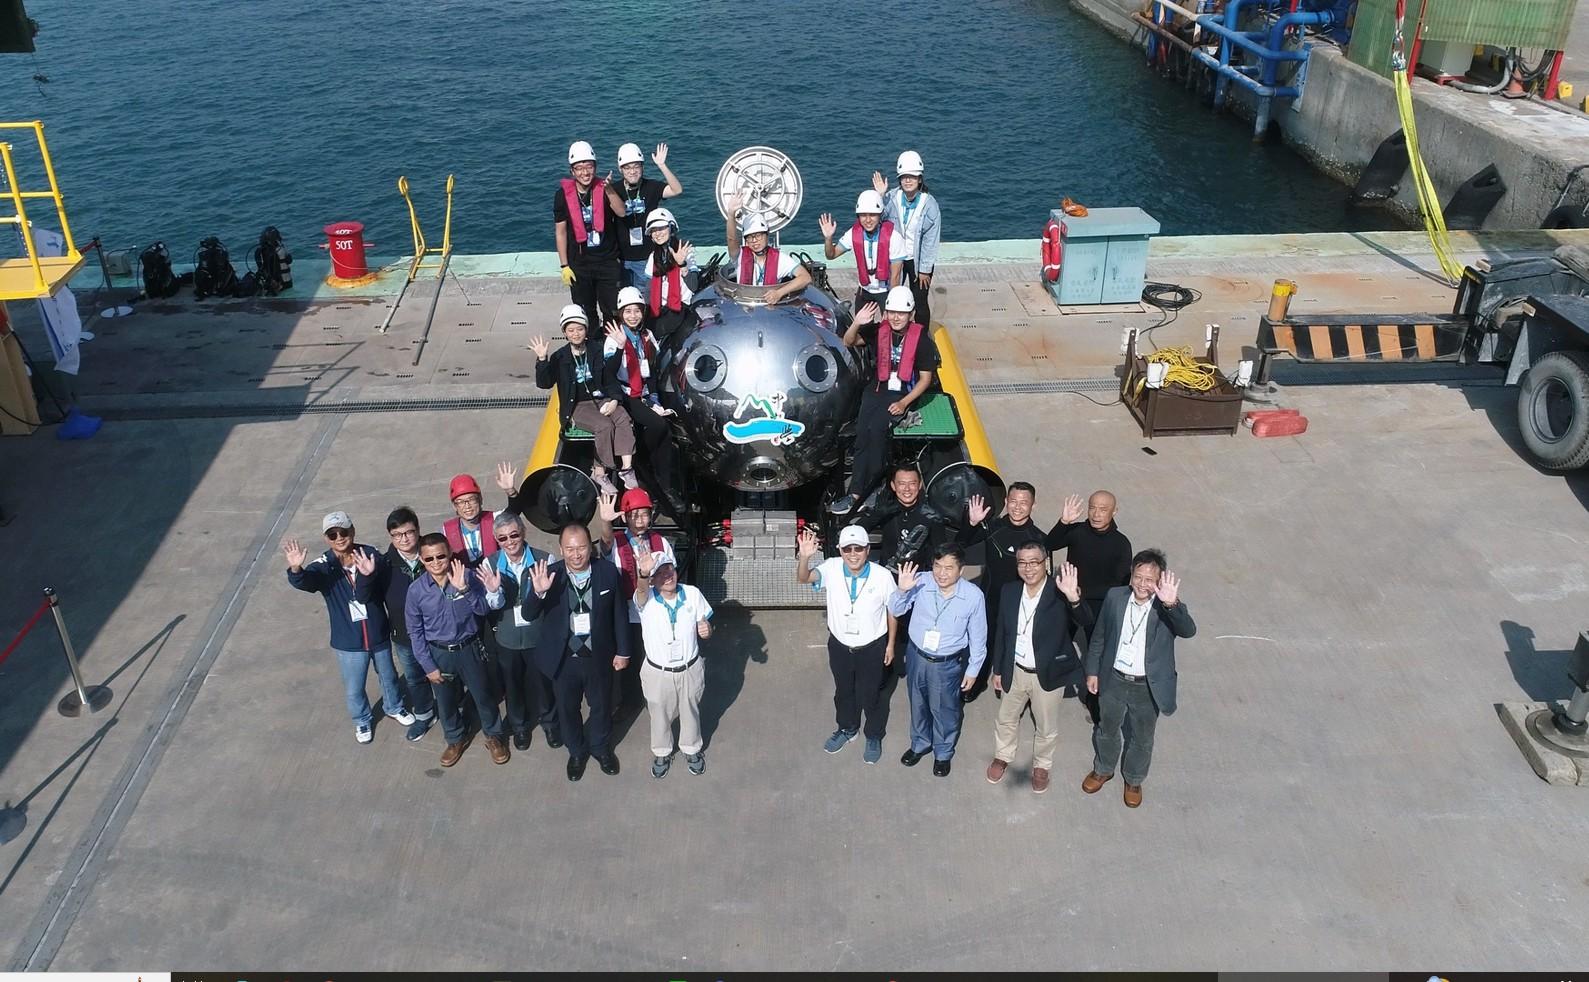  迷你潛艇發表會，於高雄港水域內演示艙內操控載具航行